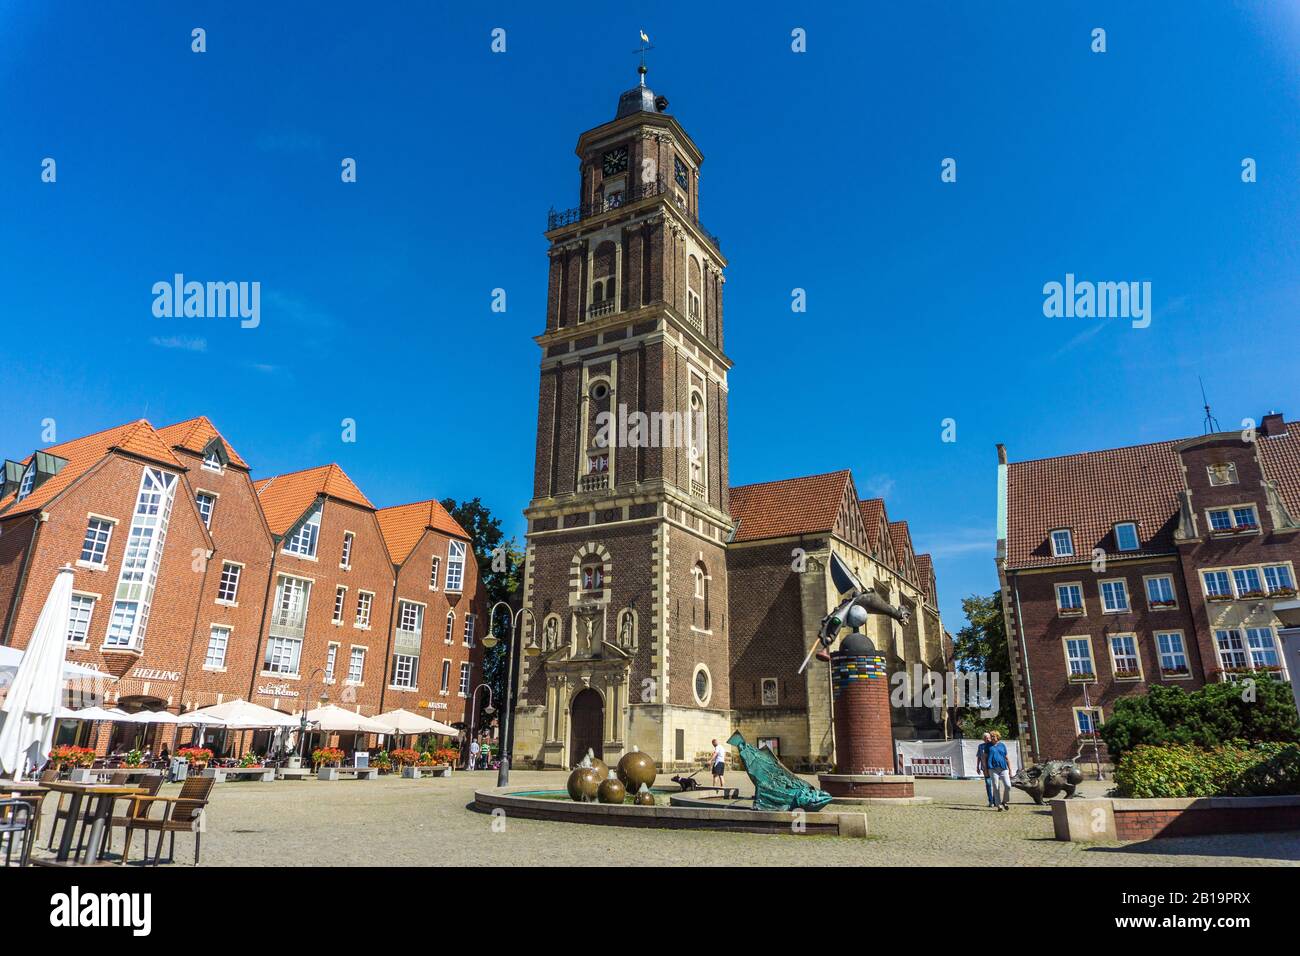 Pfarrkirche St. Lamberti auf dem Marktplatz von Coesfeld, Nordrhein-Westfalen, Deutschland, katholische St. Lambert-Kirche auf dem Marktplatz Coesfeld Stockfoto